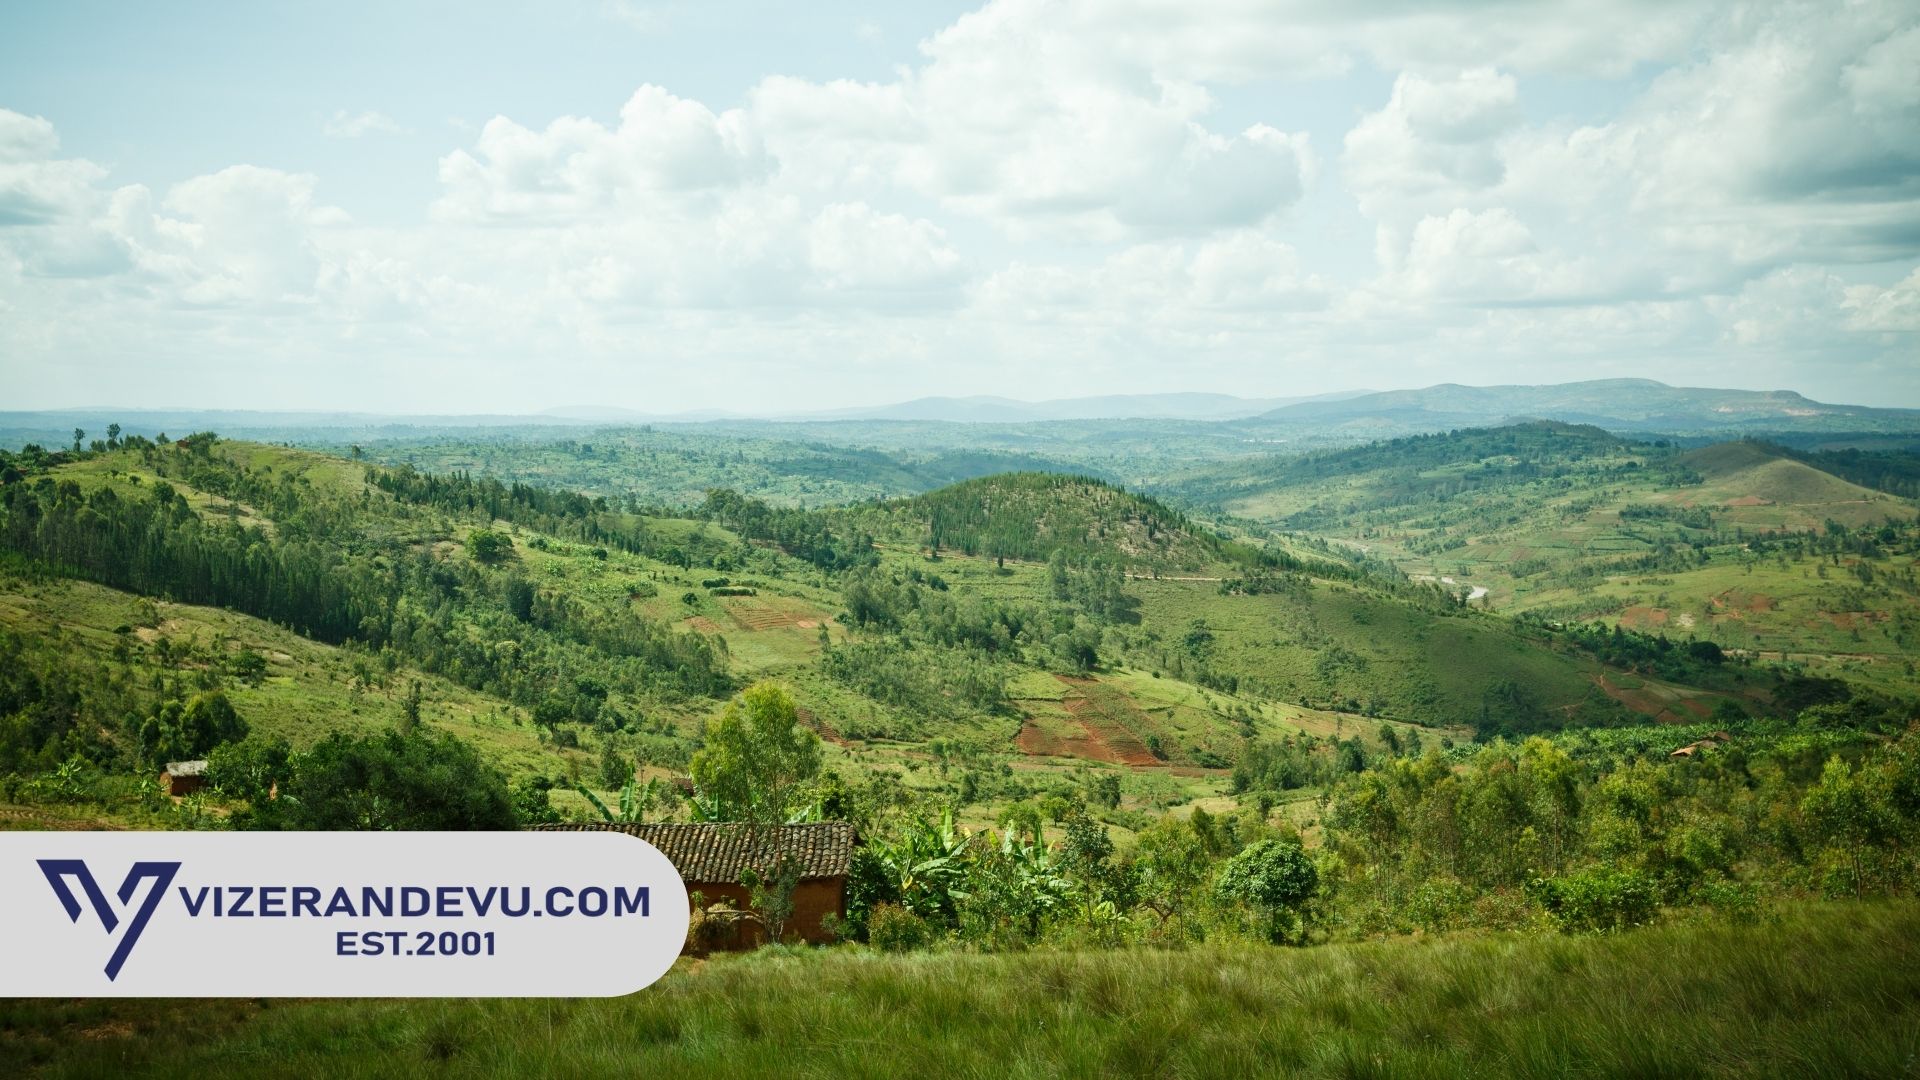 Burundi Vizesi: Randevu ve Başvuru (2021)